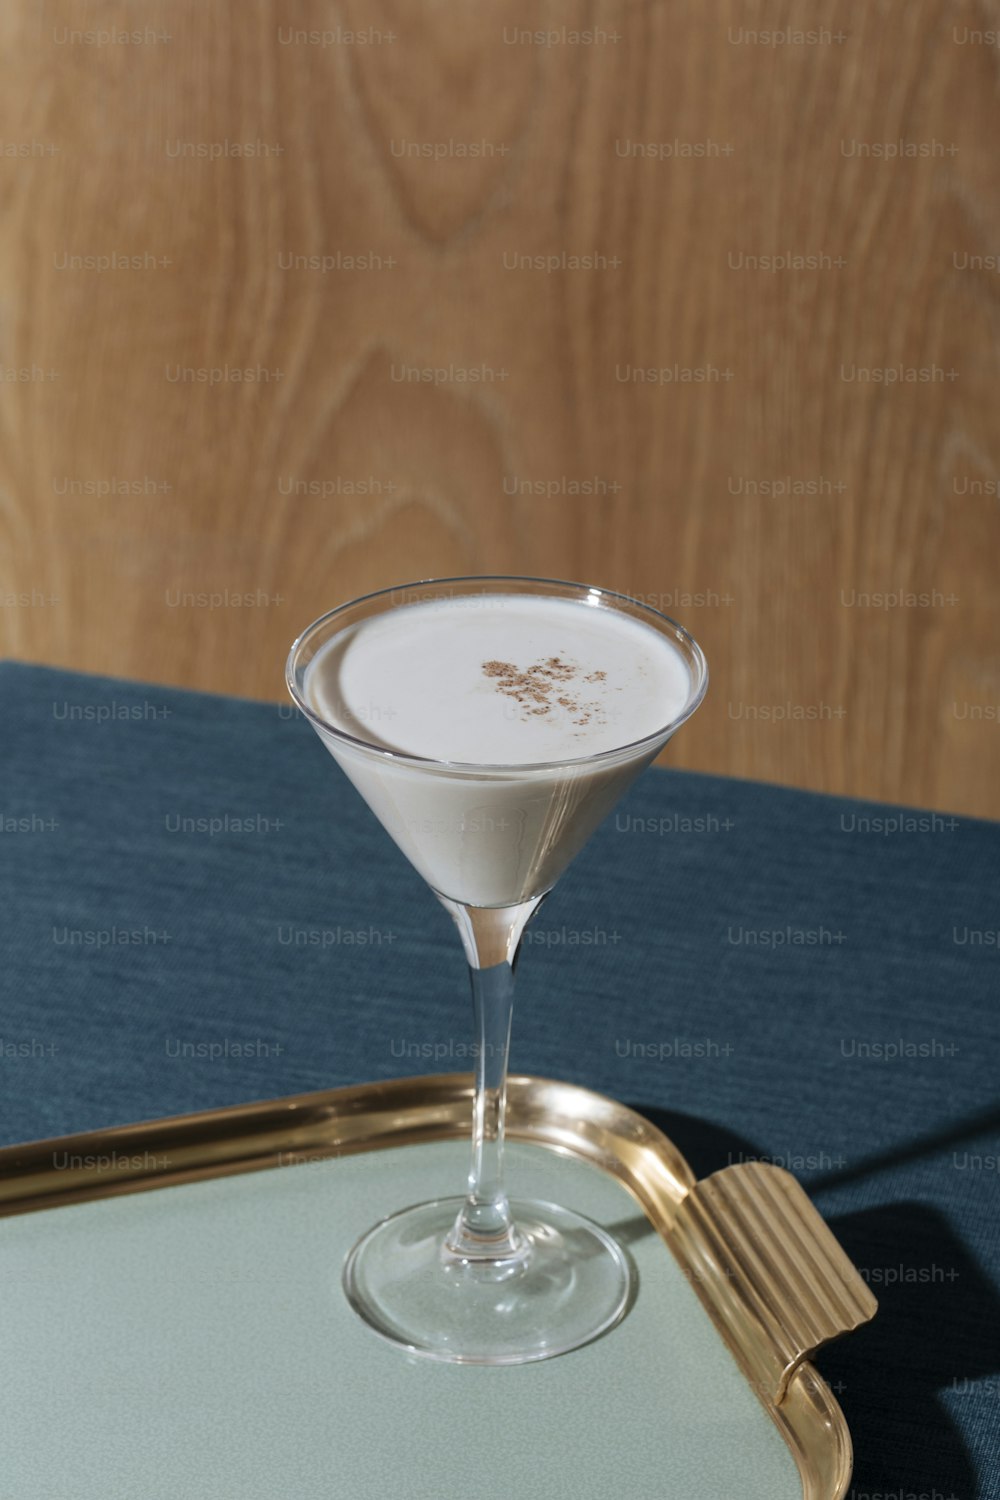 Alexander, un cocktail dopo cena con gin o cognac, crème de cacao bianco, panna fresca e noce moscata grattugiata